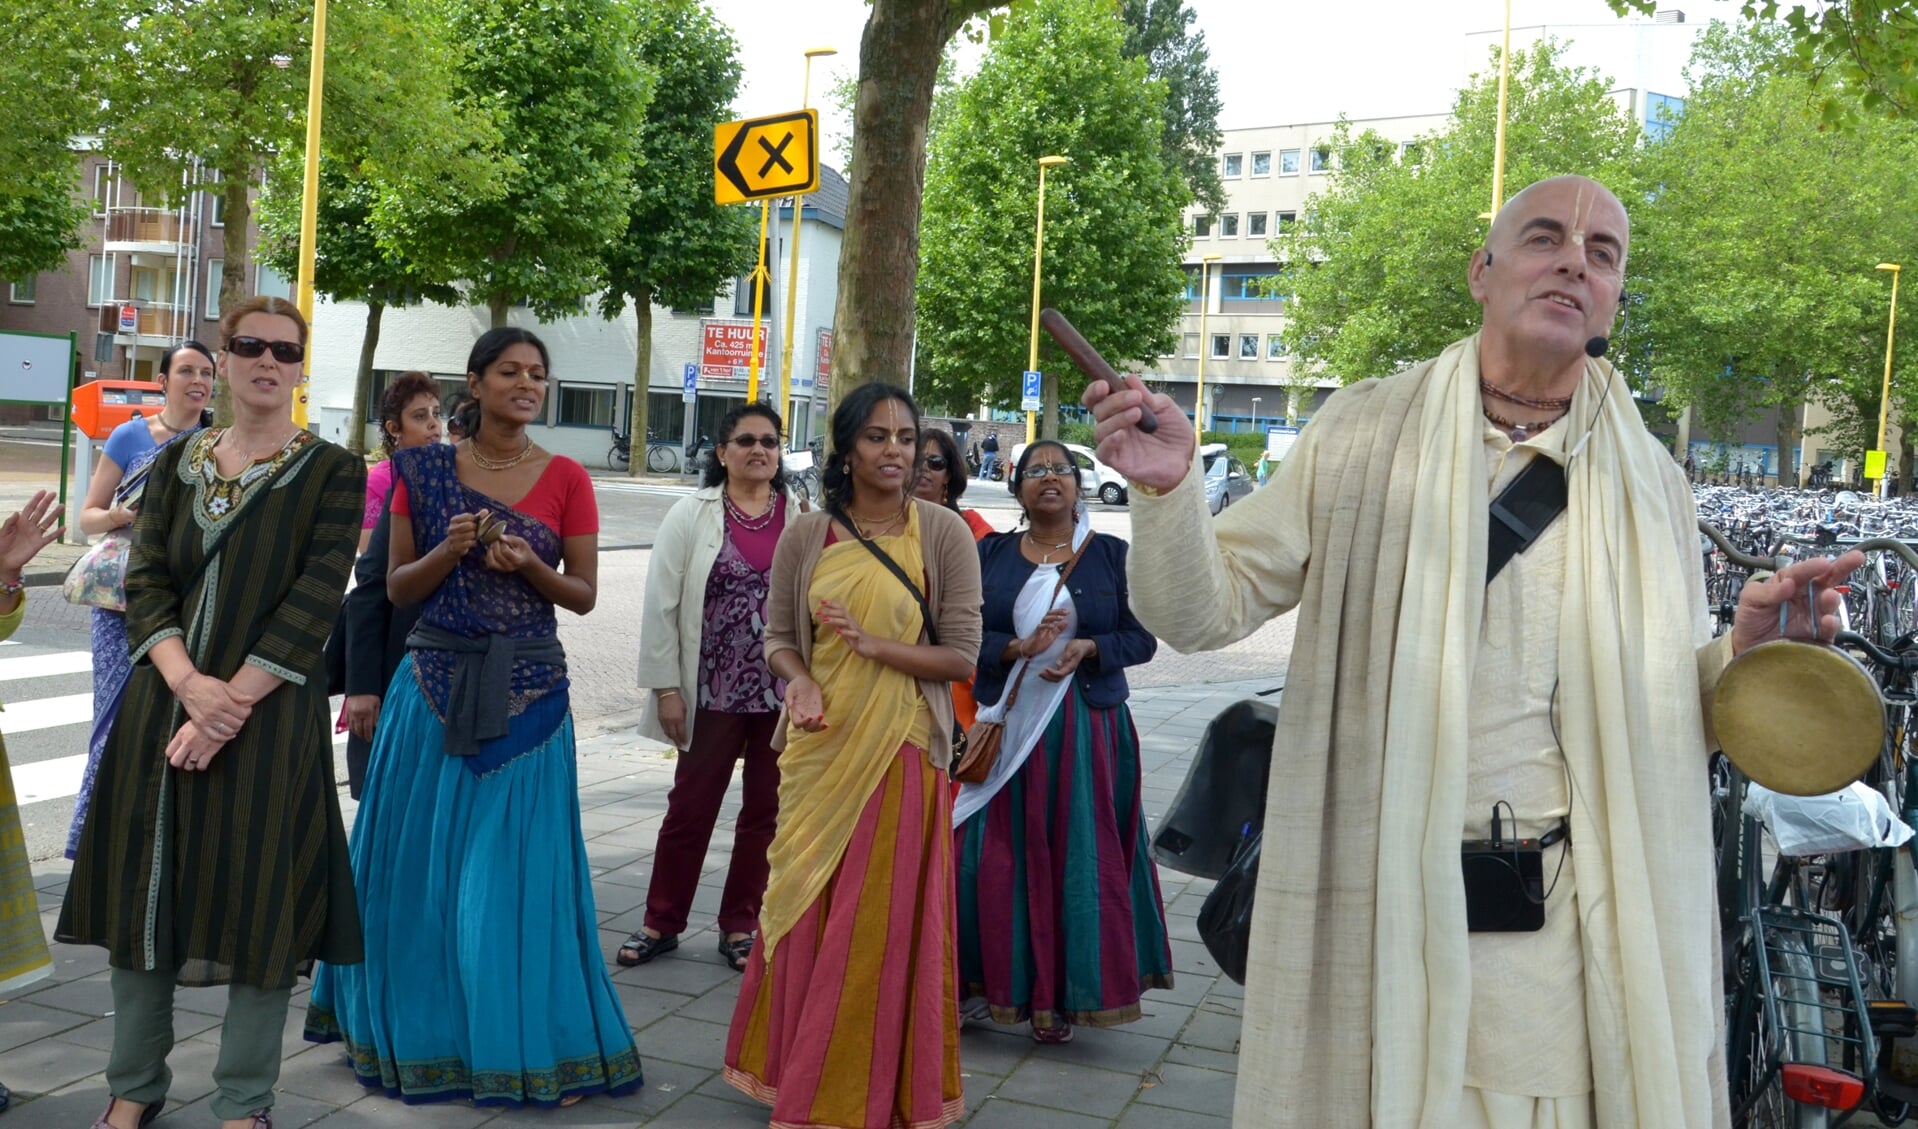 In 2014 vierde de Hare Krishnabeweging een indiaas festival in Gouda